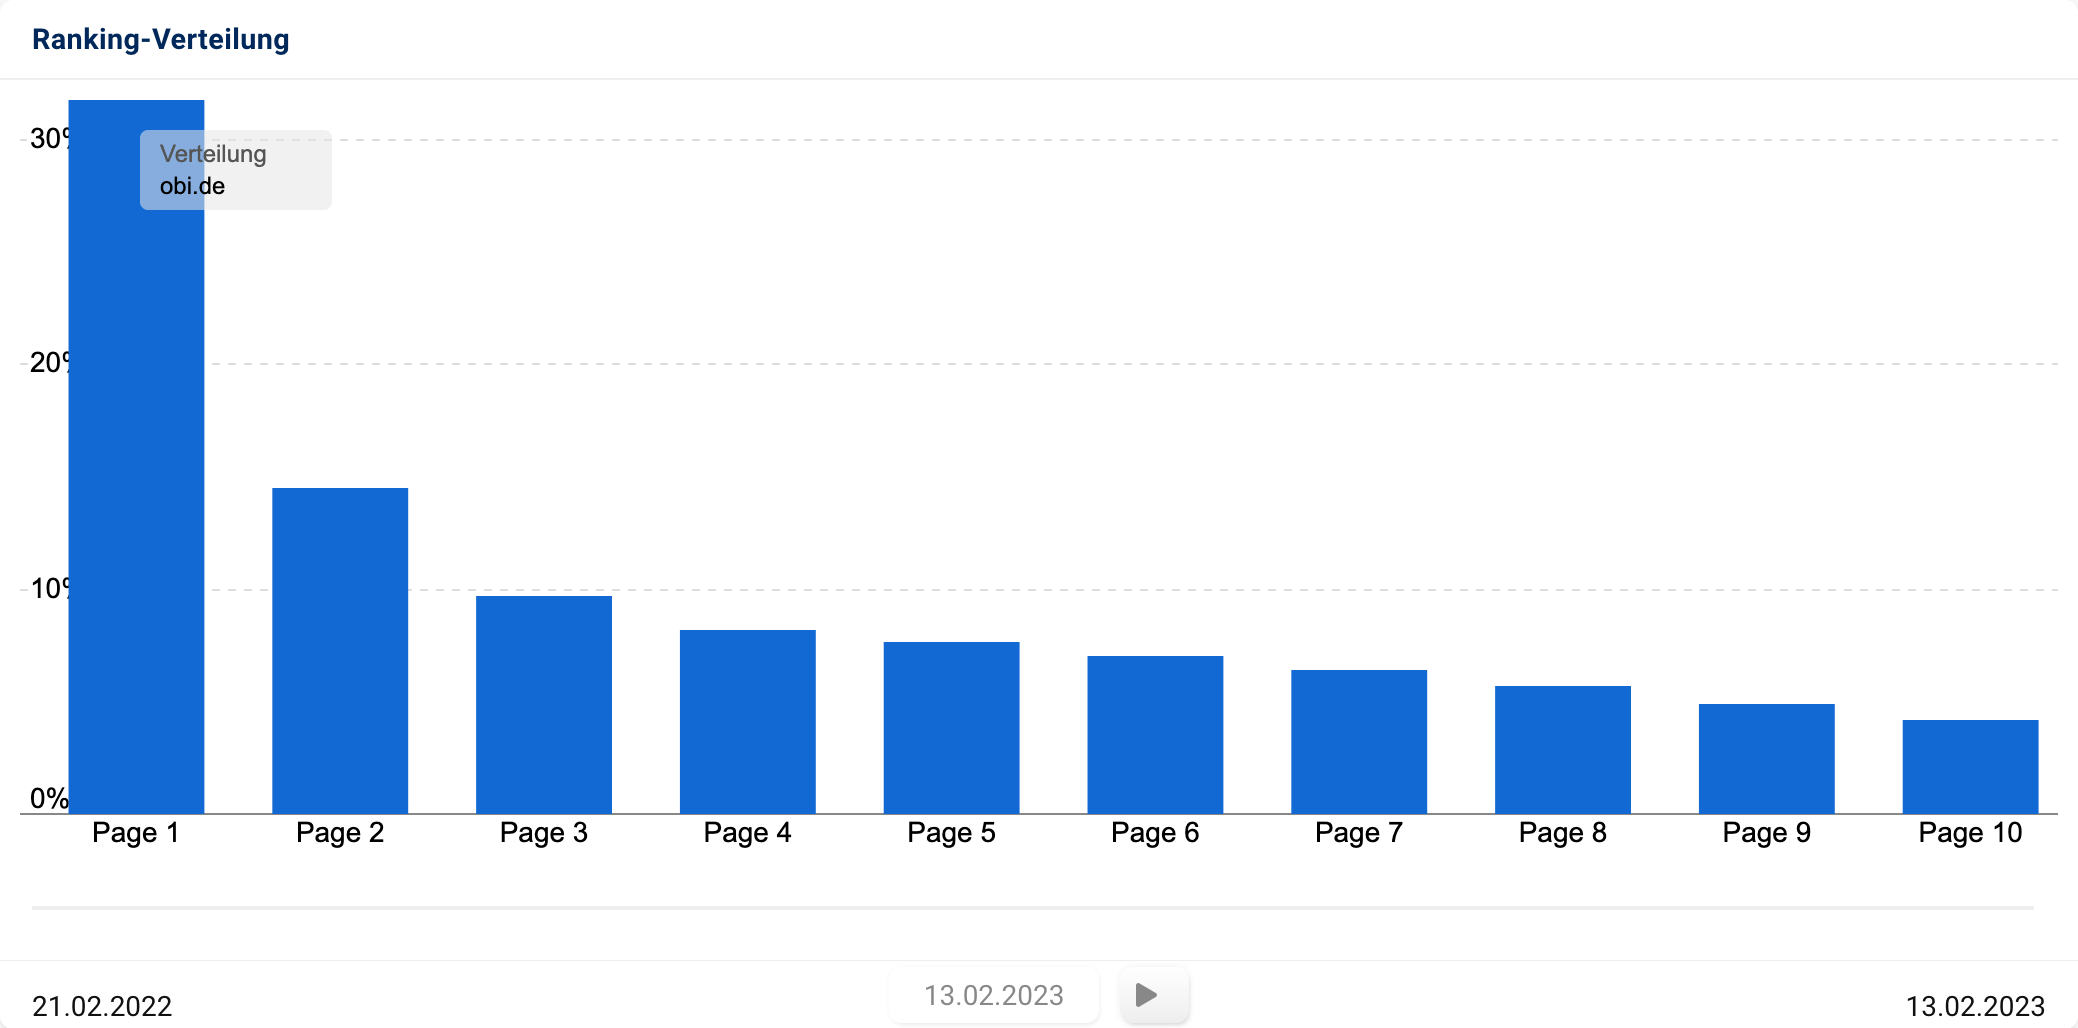 Ranking-Verteilung der Domain obi.de. Auf der ersten Ergebnisseite wurden 31,75% aller Rankings gefunden.